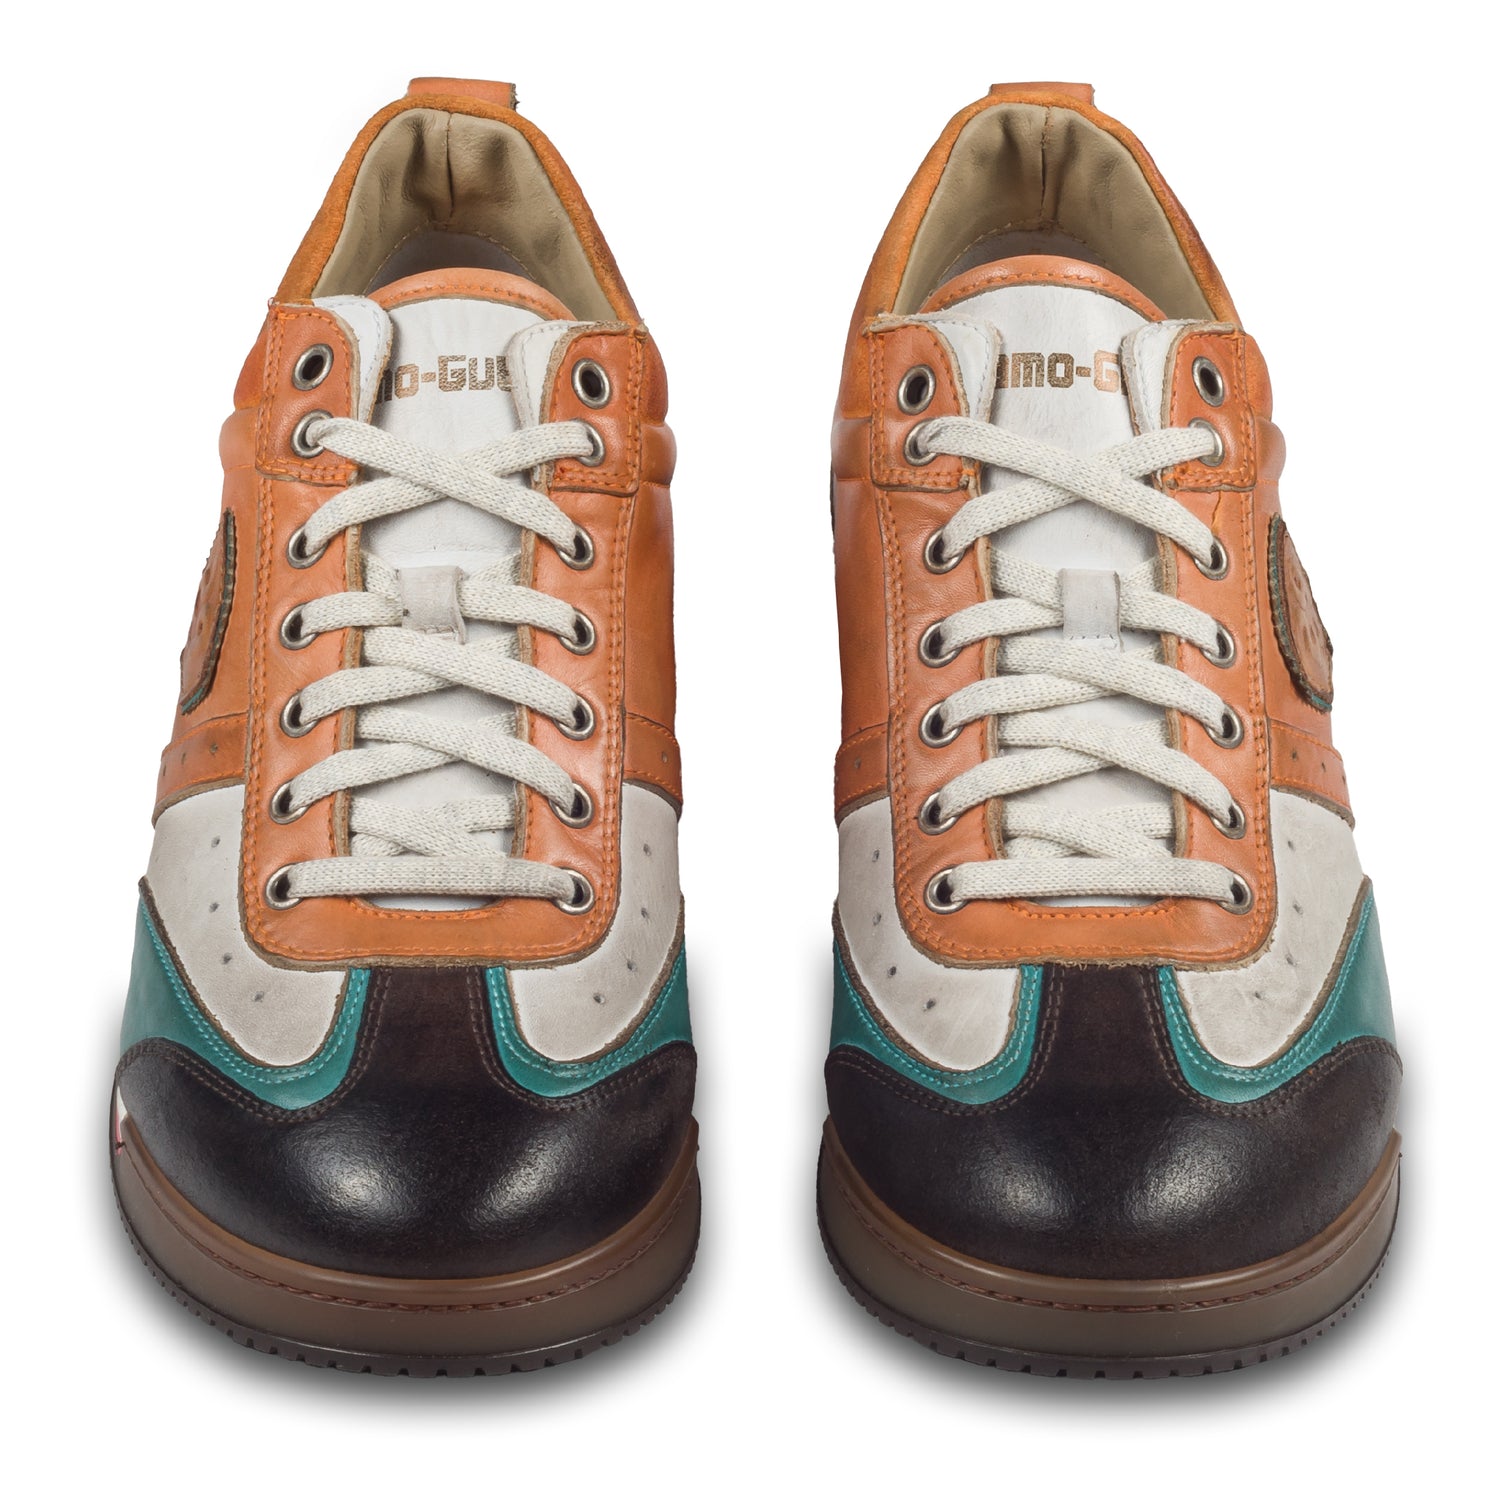 KAMO-GUTSU Herren Leder Sneaker orange / weiß / türkis / grau, Retro-Optik. Modell SCUDO-005 siena combi. Handgefertigt in Italien. Paarweise Ansicht von vorne.  